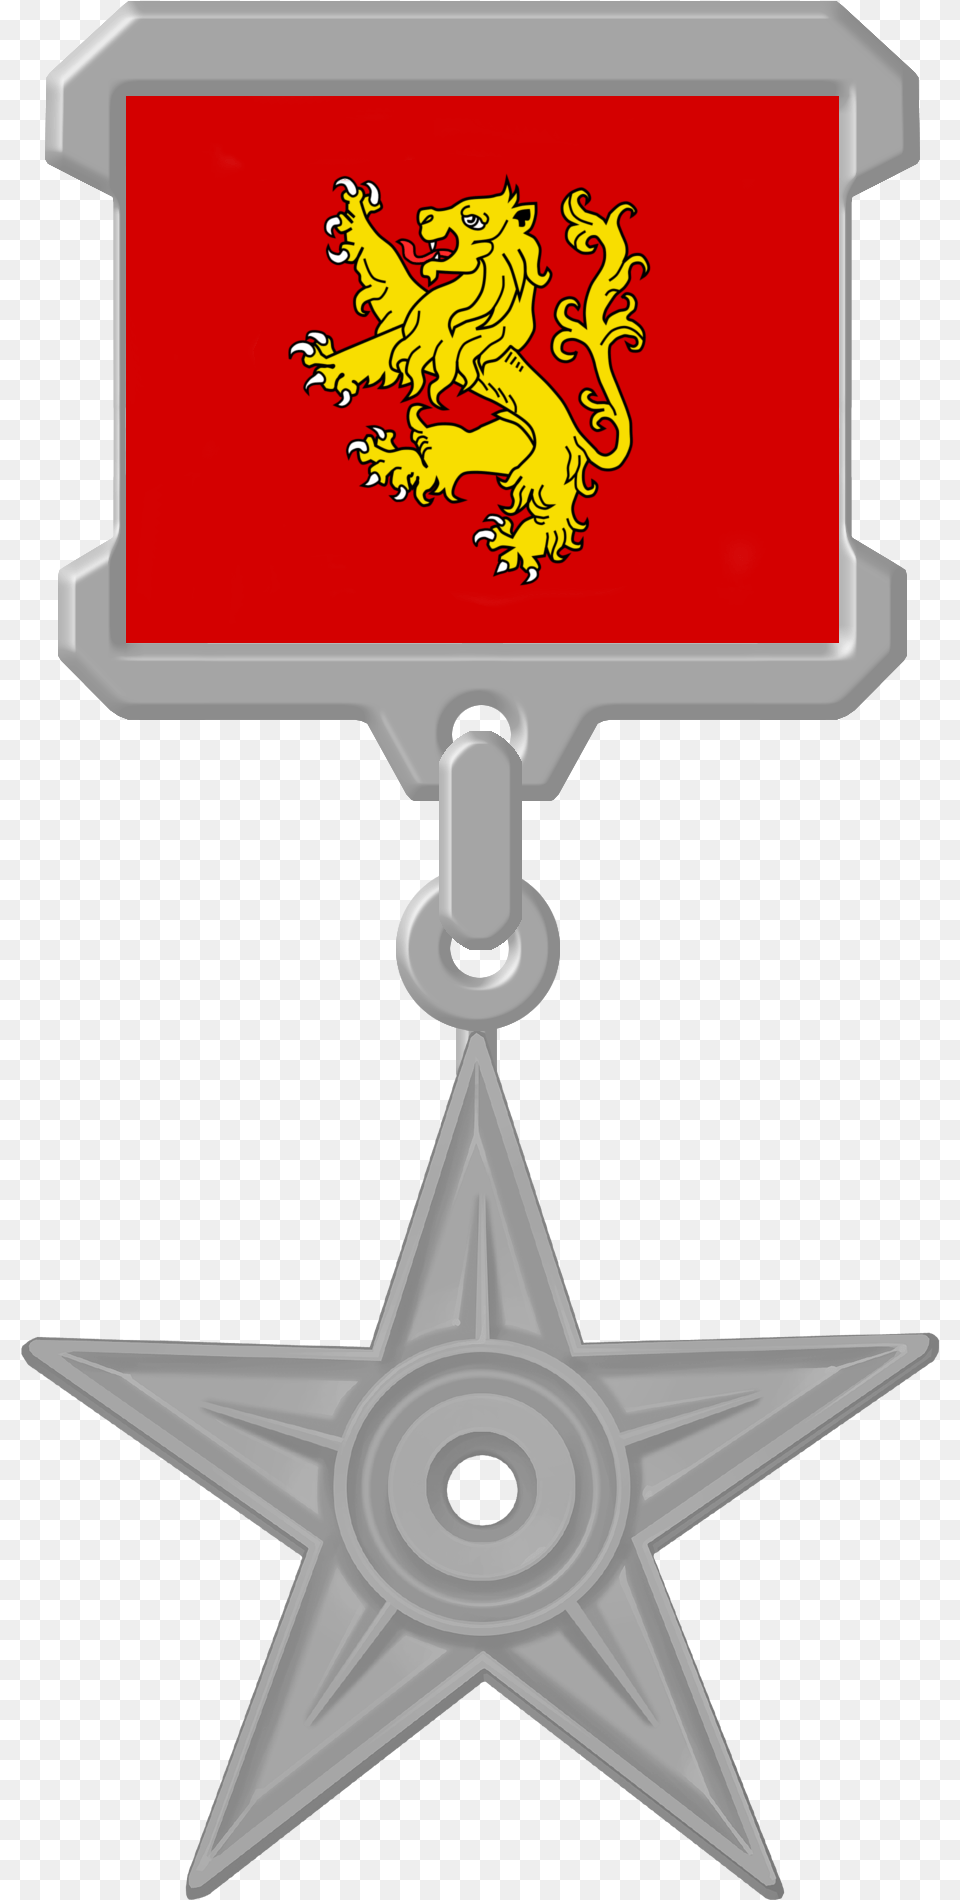 Got Lannister Silver Medal Communist Symbolism, Symbol, Emblem, Star Symbol Free Png